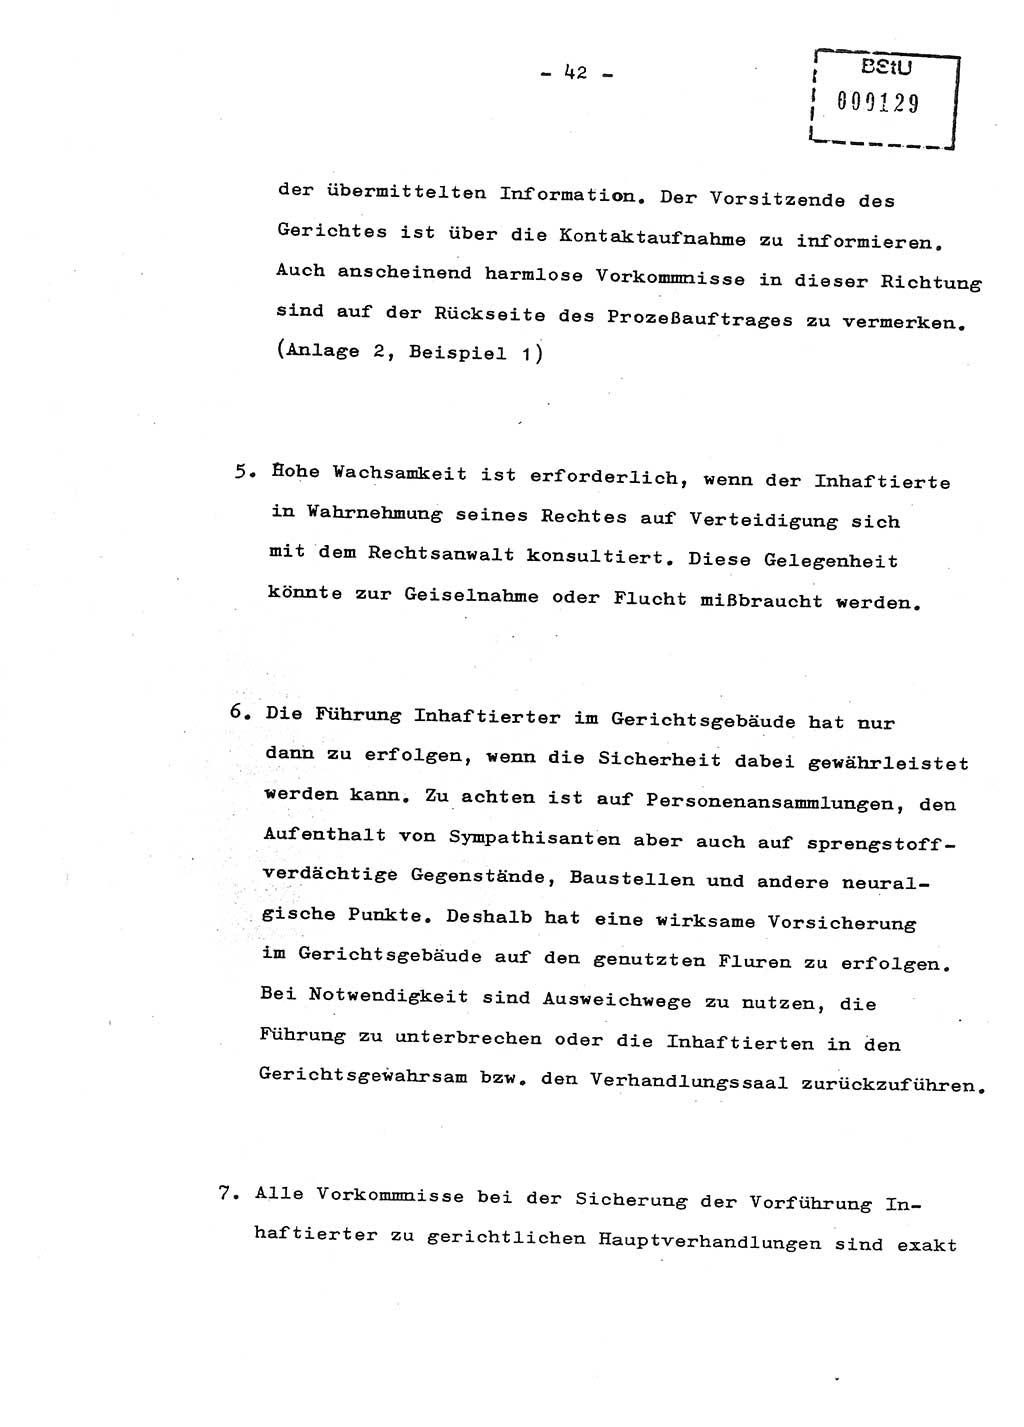 Schulungsmaterial Exemplar-Nr.: 8, Ministerium für Staatssicherheit [Deutsche Demokratische Republik (DDR)], Abteilung (Abt.) ⅩⅣ, Berlin 1987, Seite 42 (Sch.-Mat. Expl. 8 MfS DDR Abt. ⅩⅣ /87 1987, S. 42)